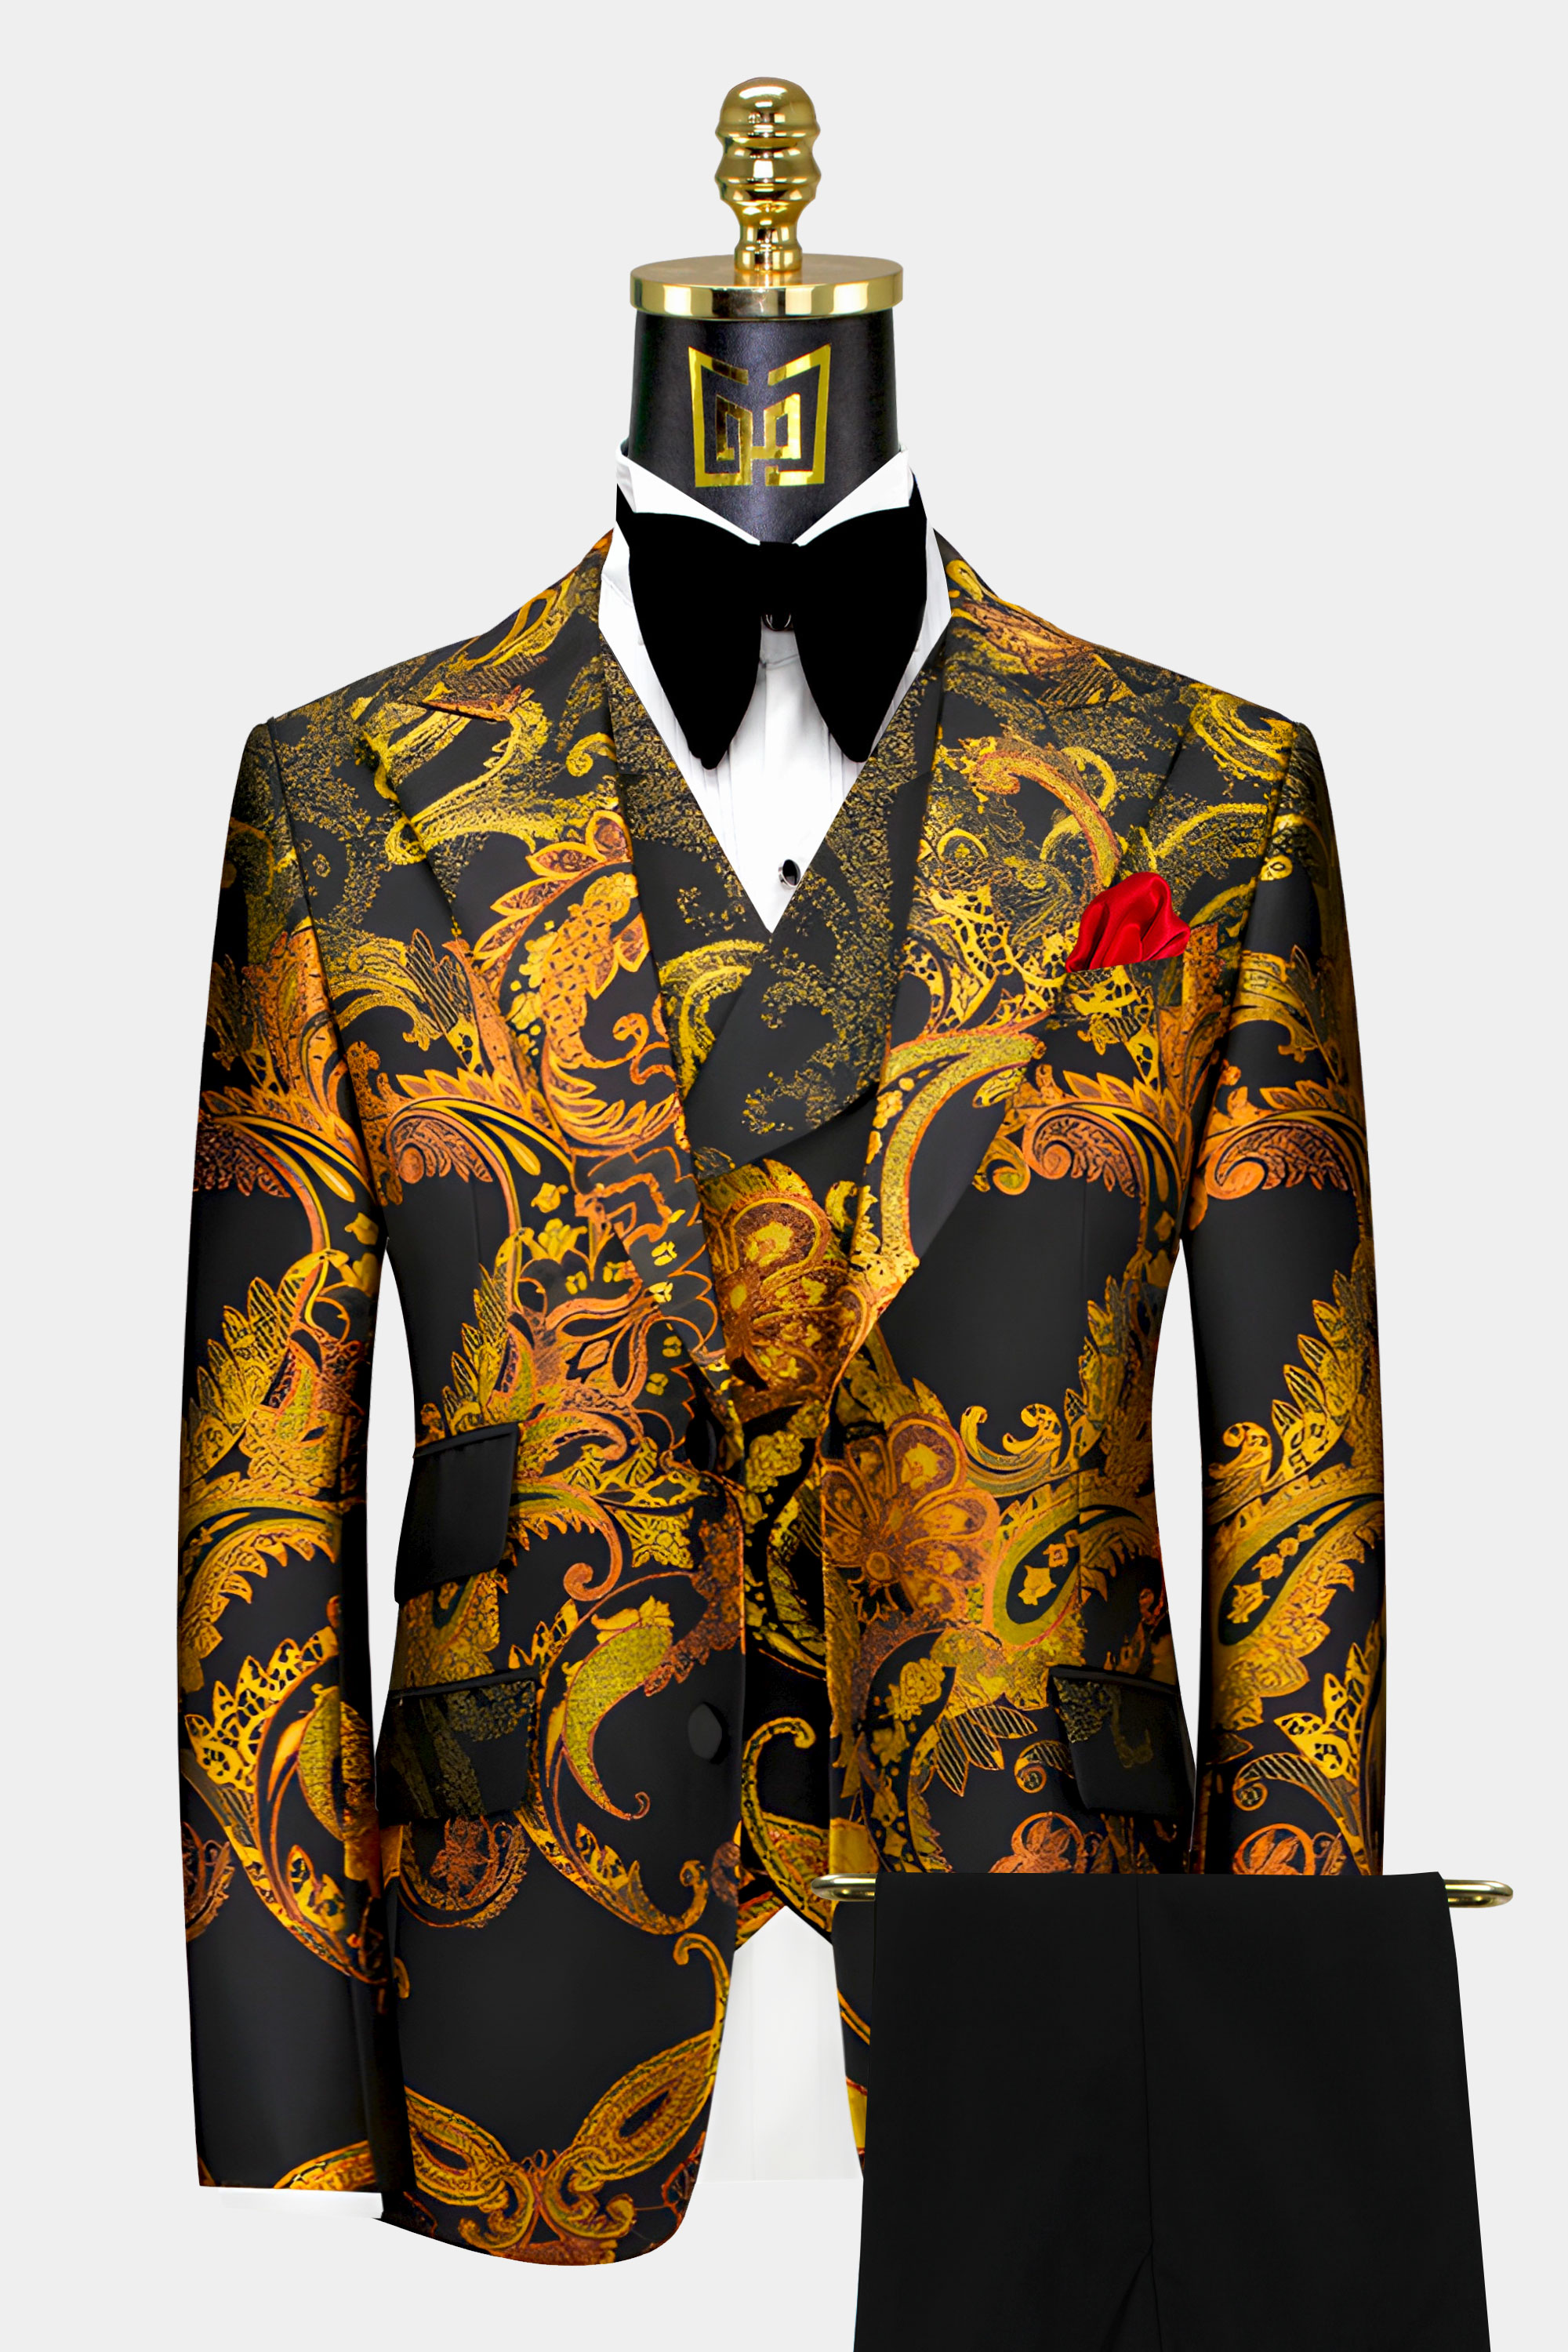 Yellow-Black-and-Orange-Suit-Groom-Wedding-Suit-For-Men-from-Gentlemansguru.com